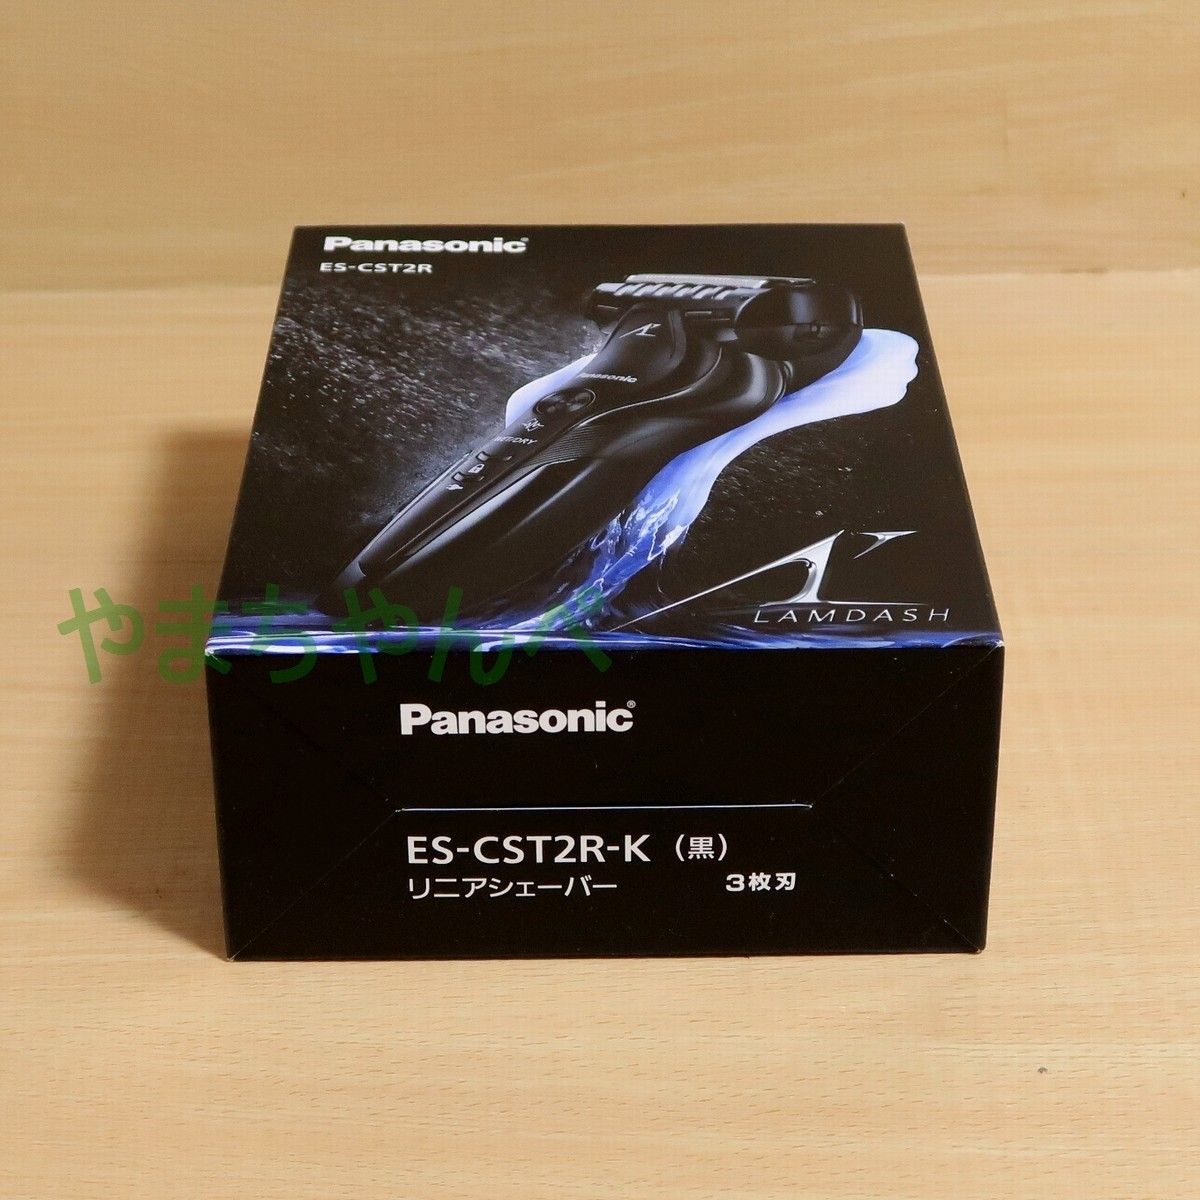 新品★Panasonic パナソニック ラムダッシュ ES-CST2R-K ブラック 3枚刃/お風呂剃り メンズシェーバー